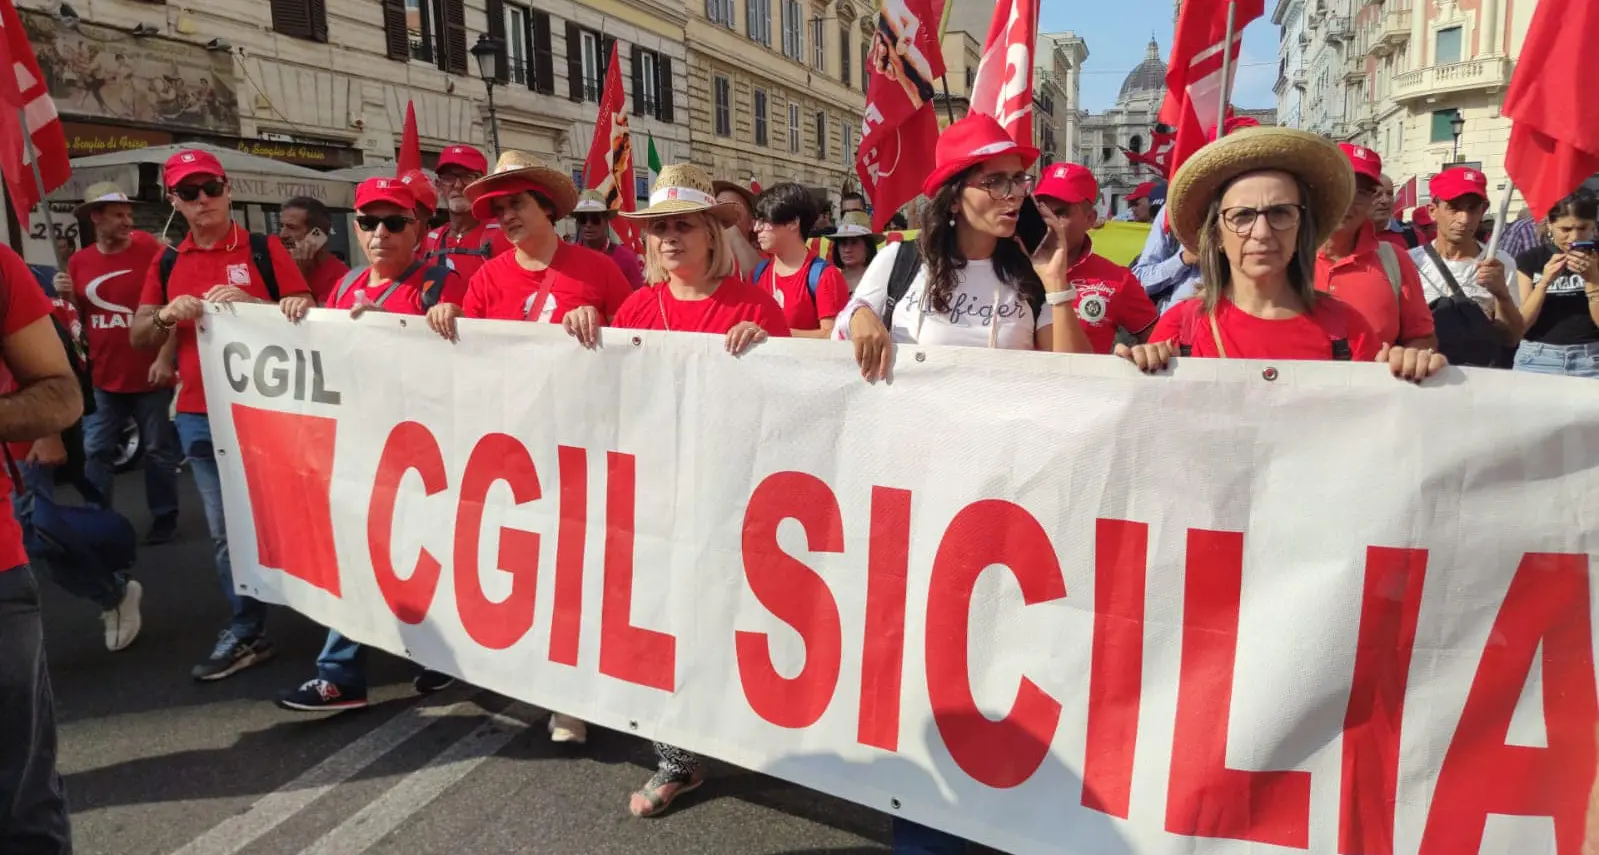 Cgil Sicilia: giovani e lavoro per costruire il futuro